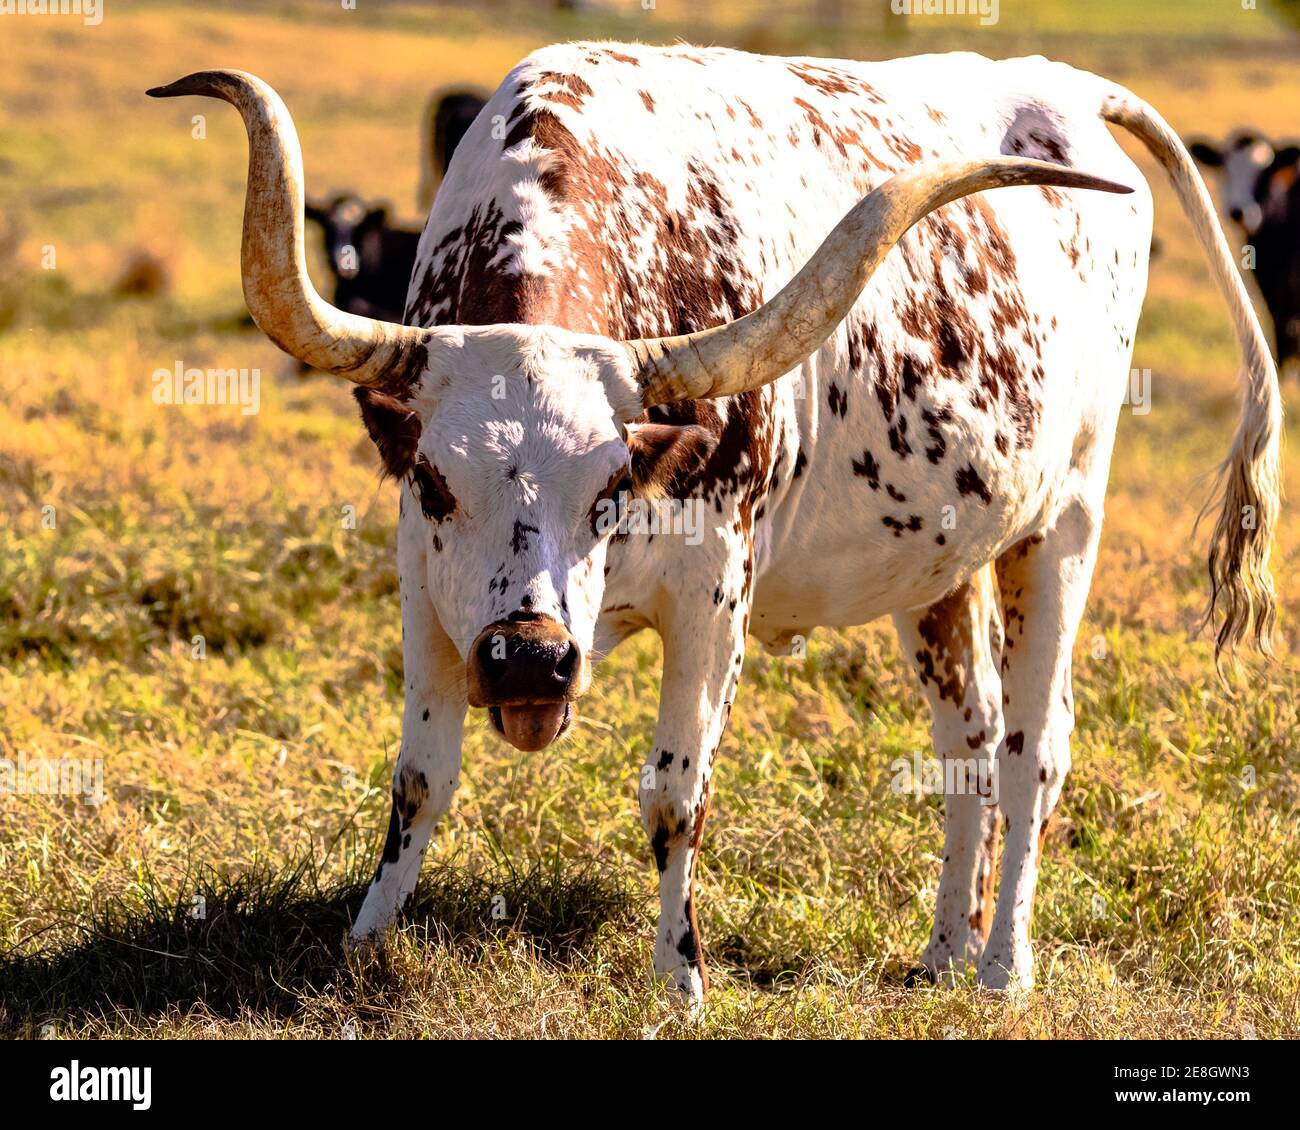 Texas Longhorn vache avec la tête vers le bas et la langue vers l'extérieur Banque D'Images